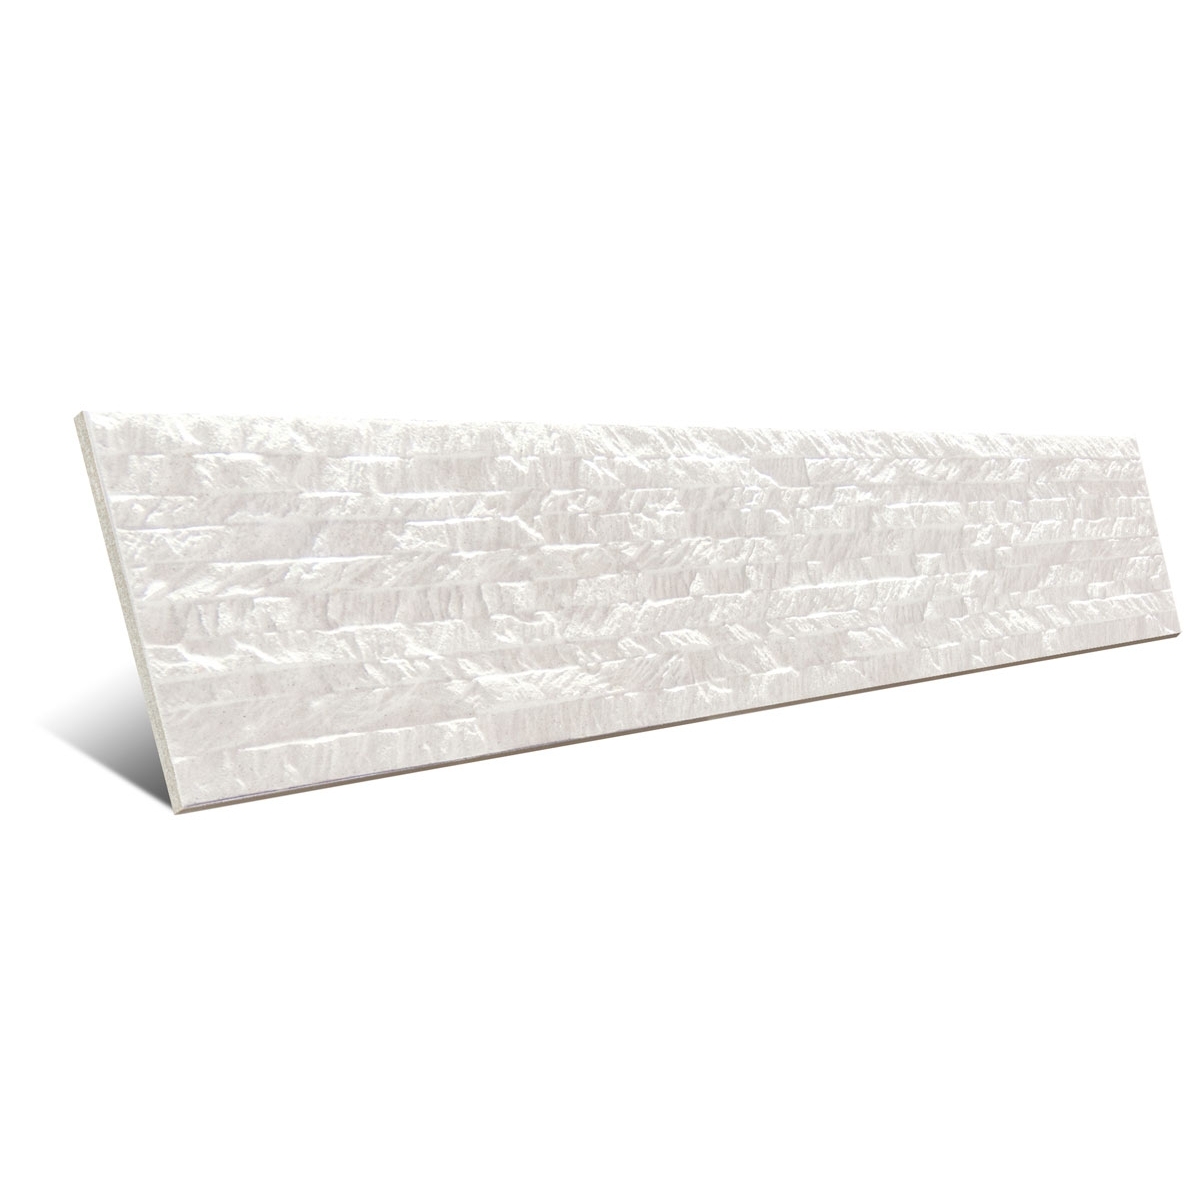 Ábidos Blanco 10x50 cm (caja de 0,75 m2) - Mijares